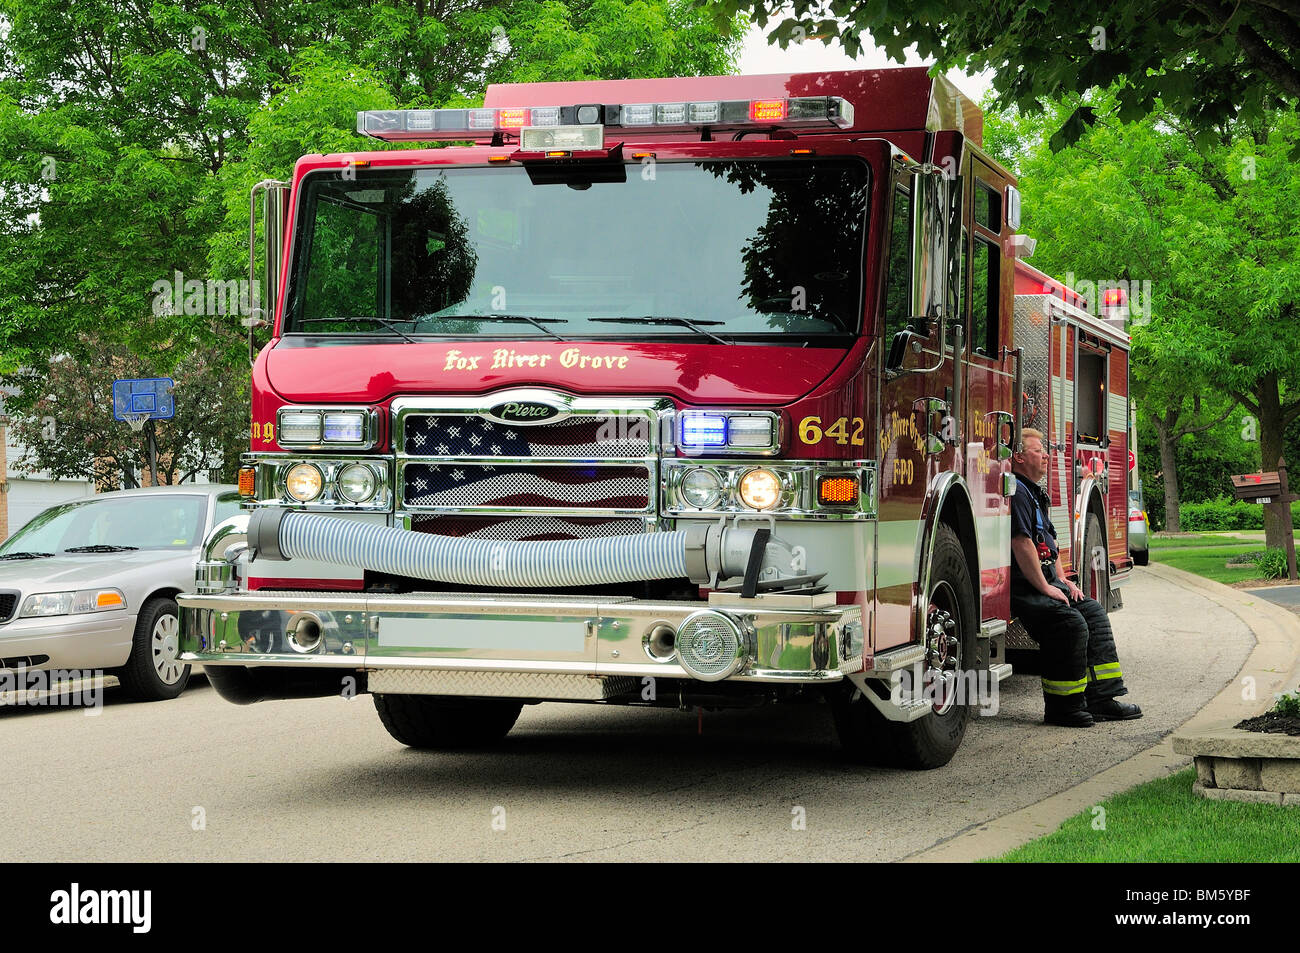 Vigile del fuoco in appoggio sul fuoco motore durante una chiamata di emergenza in una casa suburbana. Nota patriottica bandiera americana graphic sui carrelli grill. Foto Stock